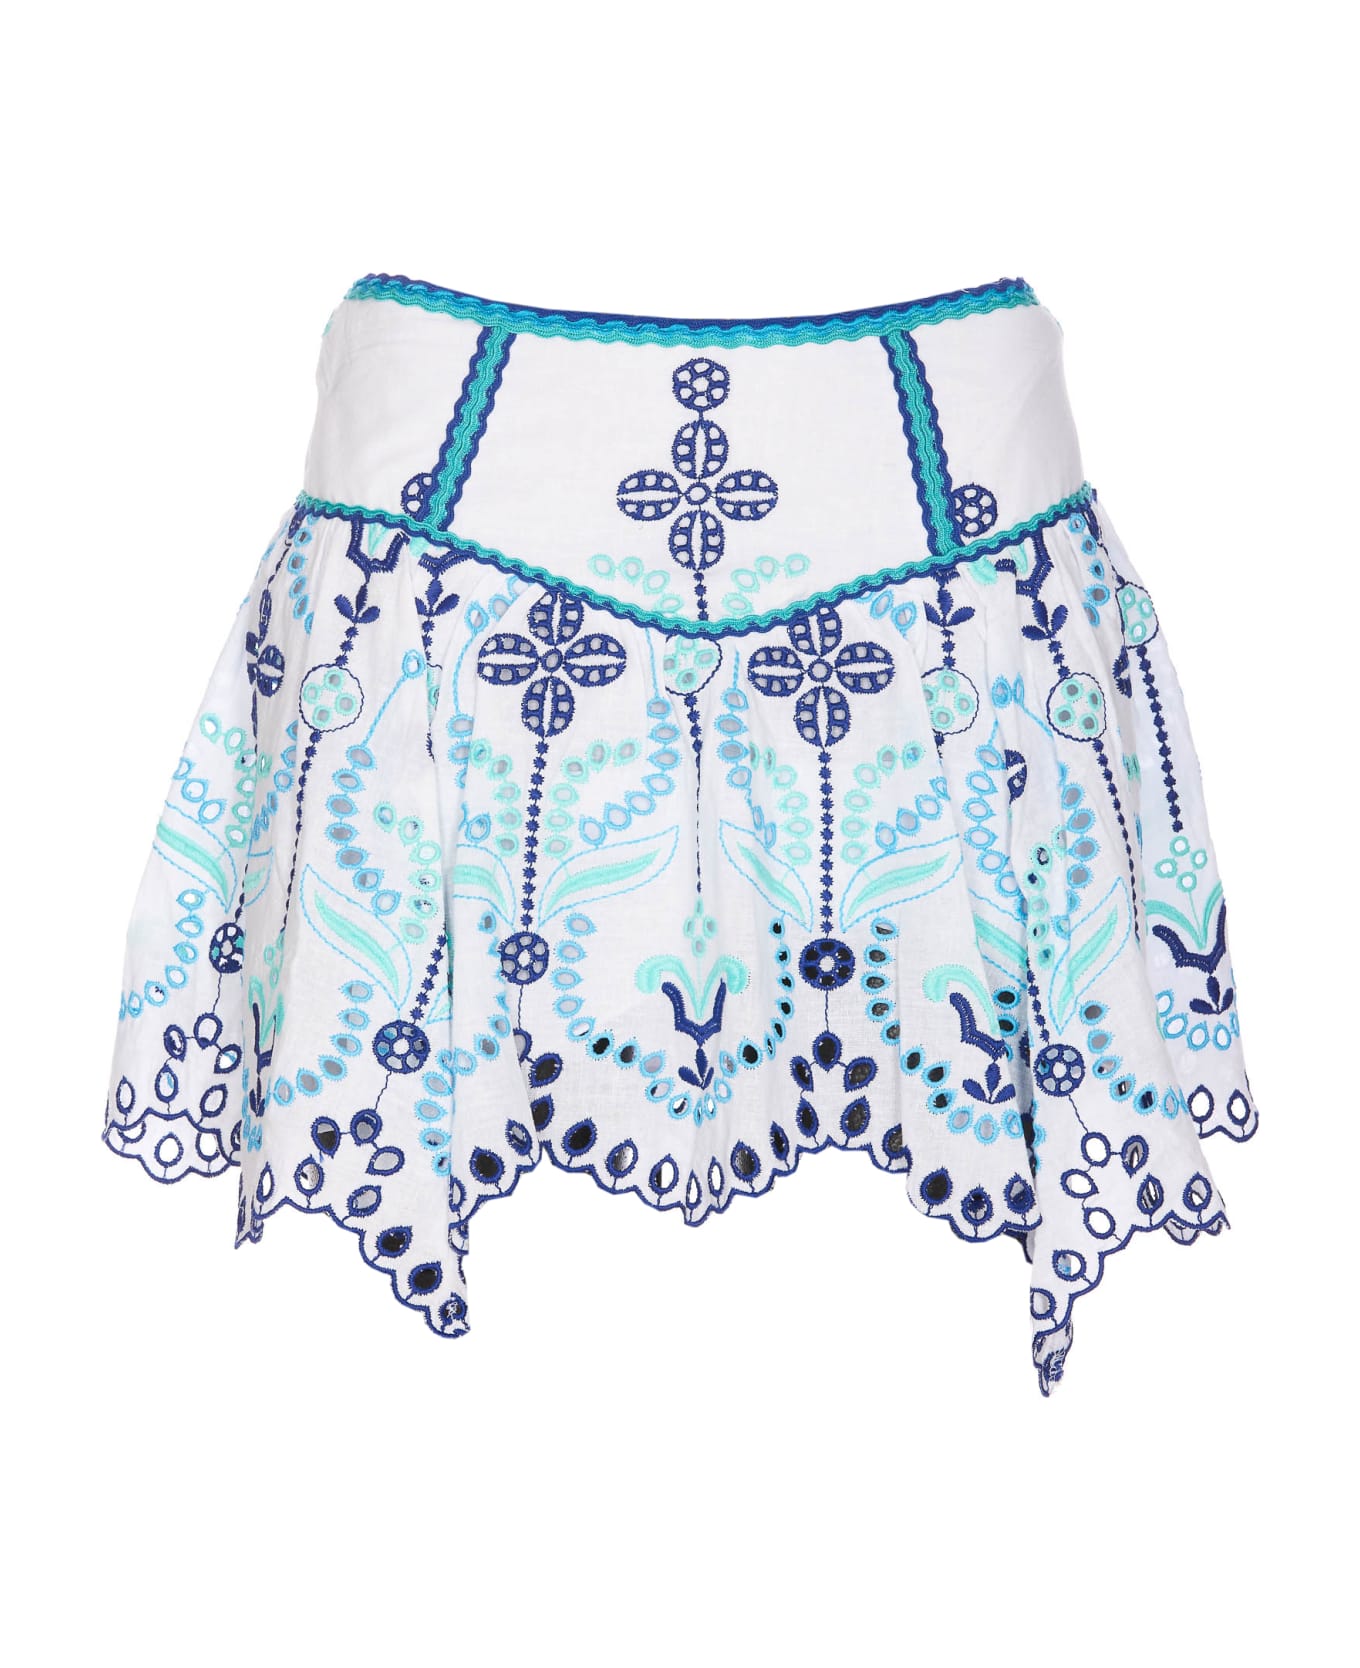 Charo Ruiz Pauline Short Skirt - Blue